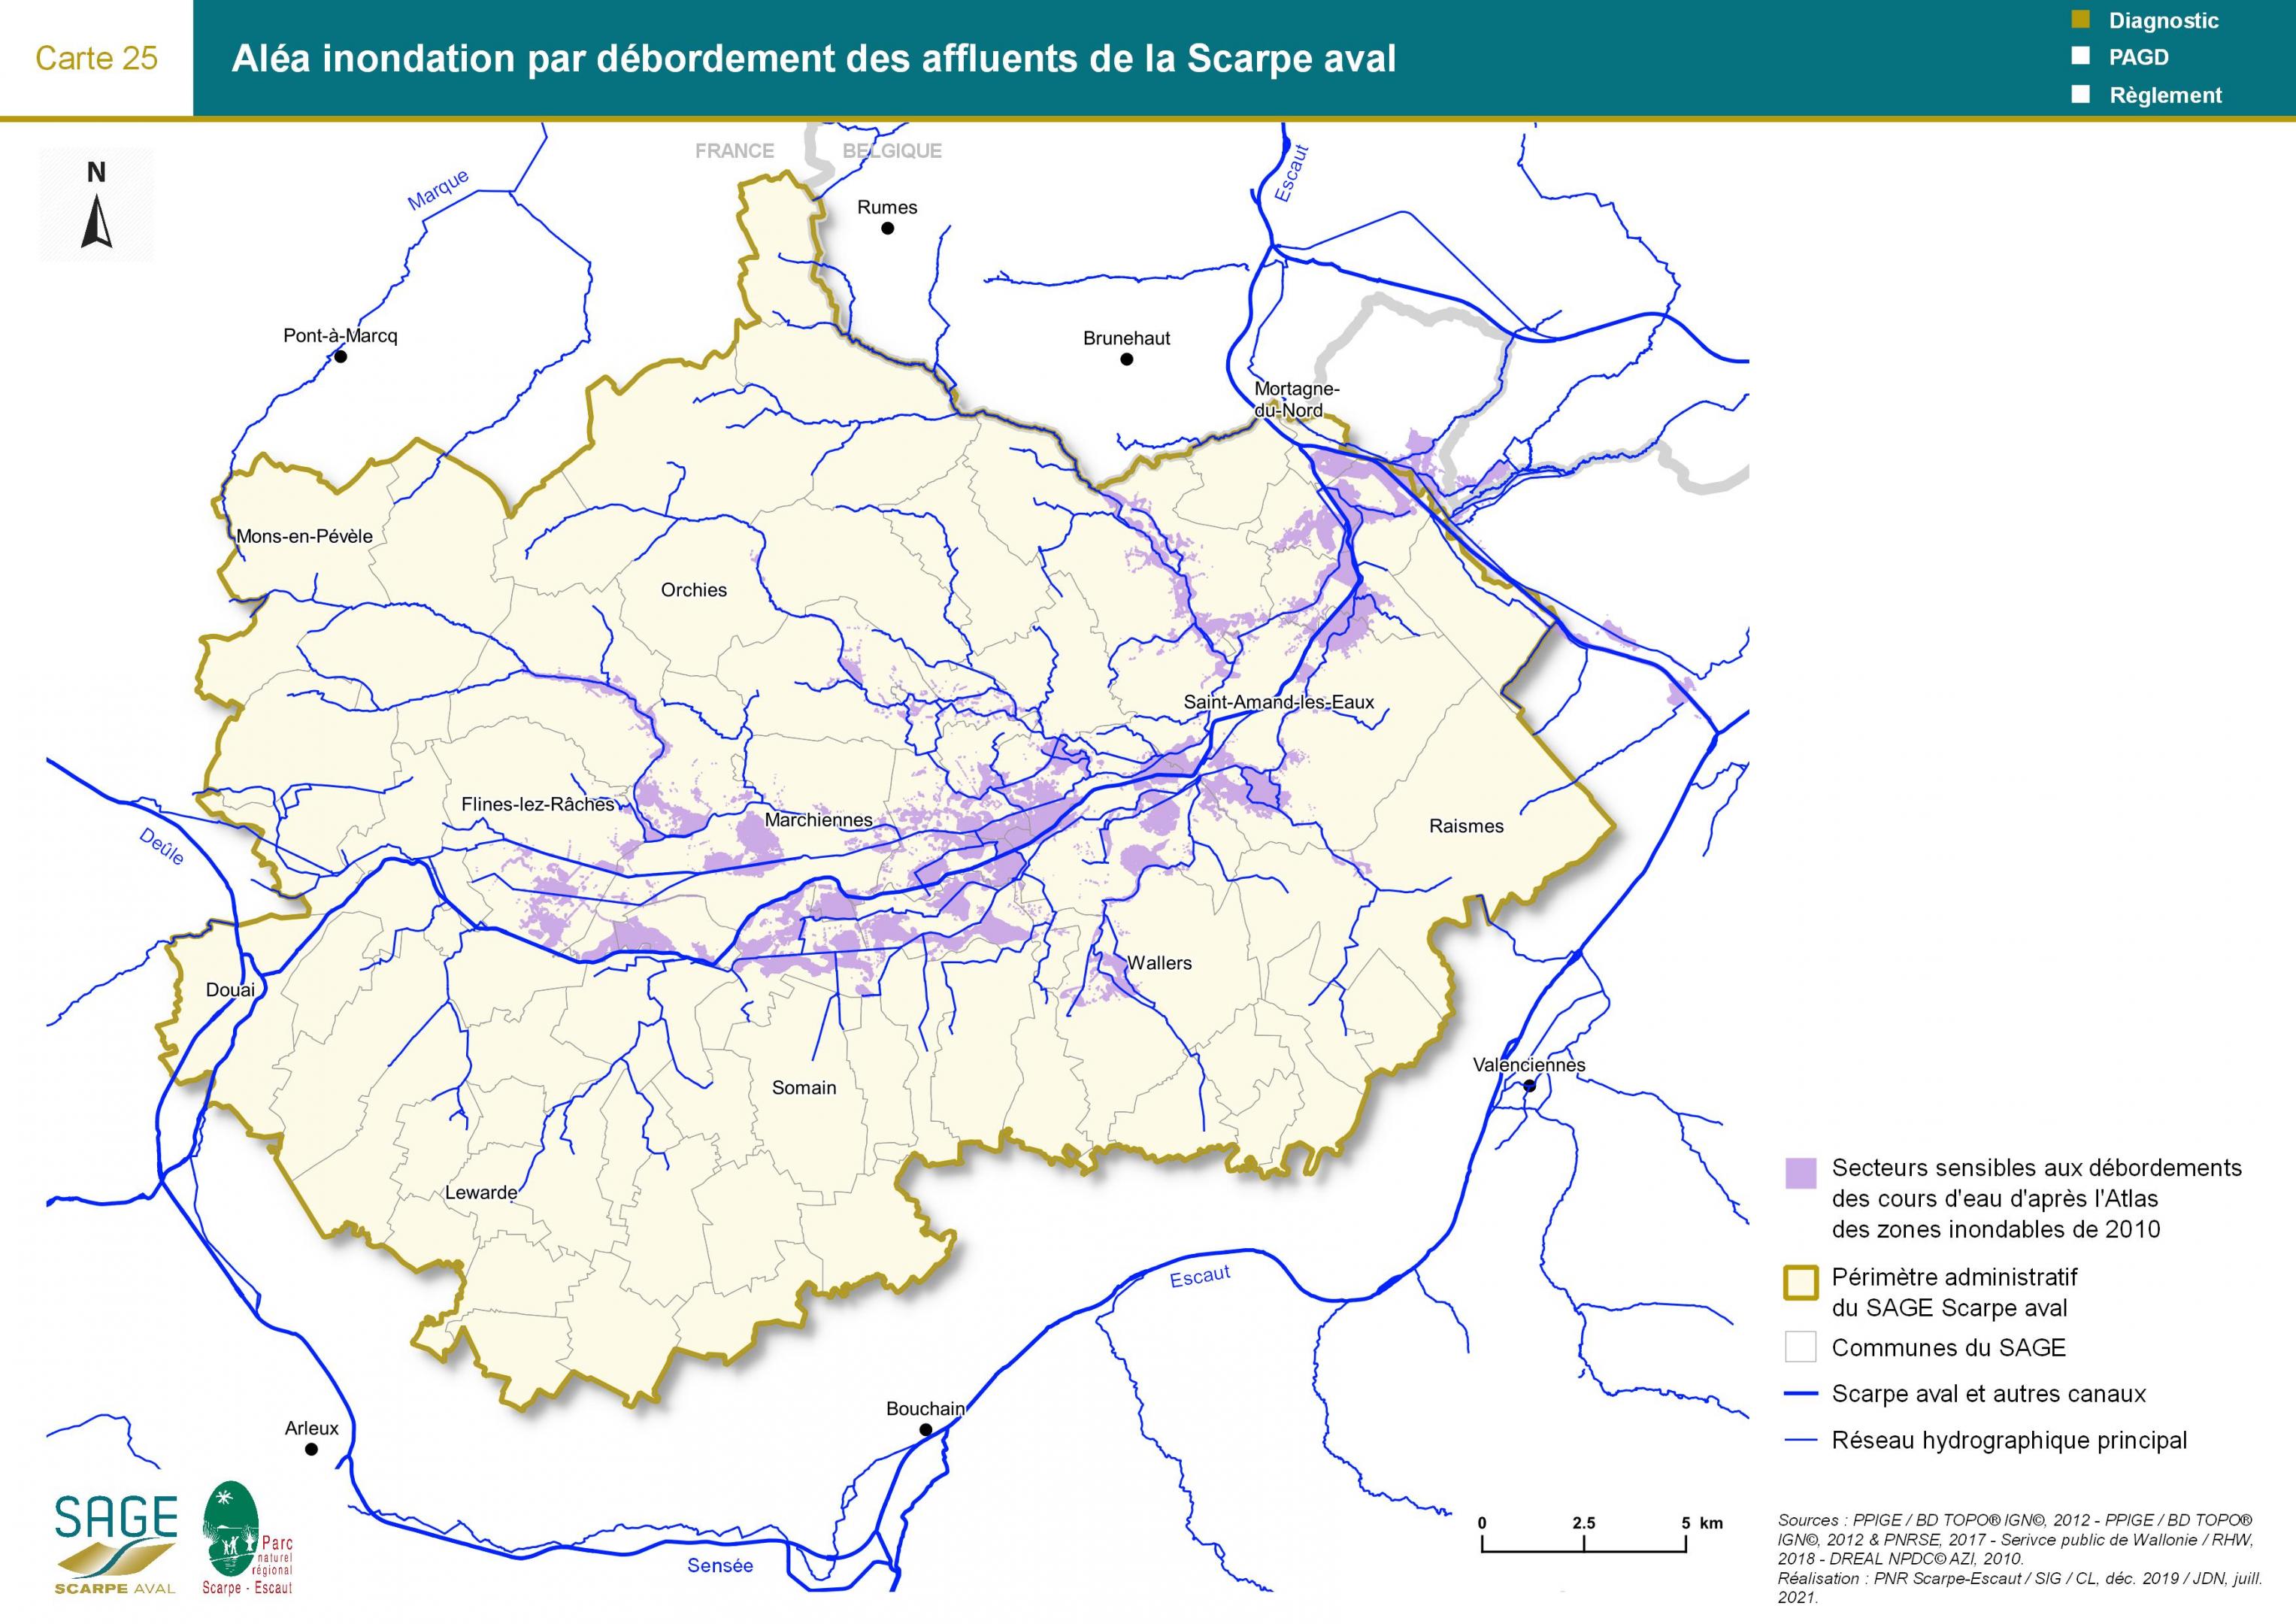 Etat des lieux - Carte 25 : Aléa inondation par débordement des affluents de la Scarpe aval